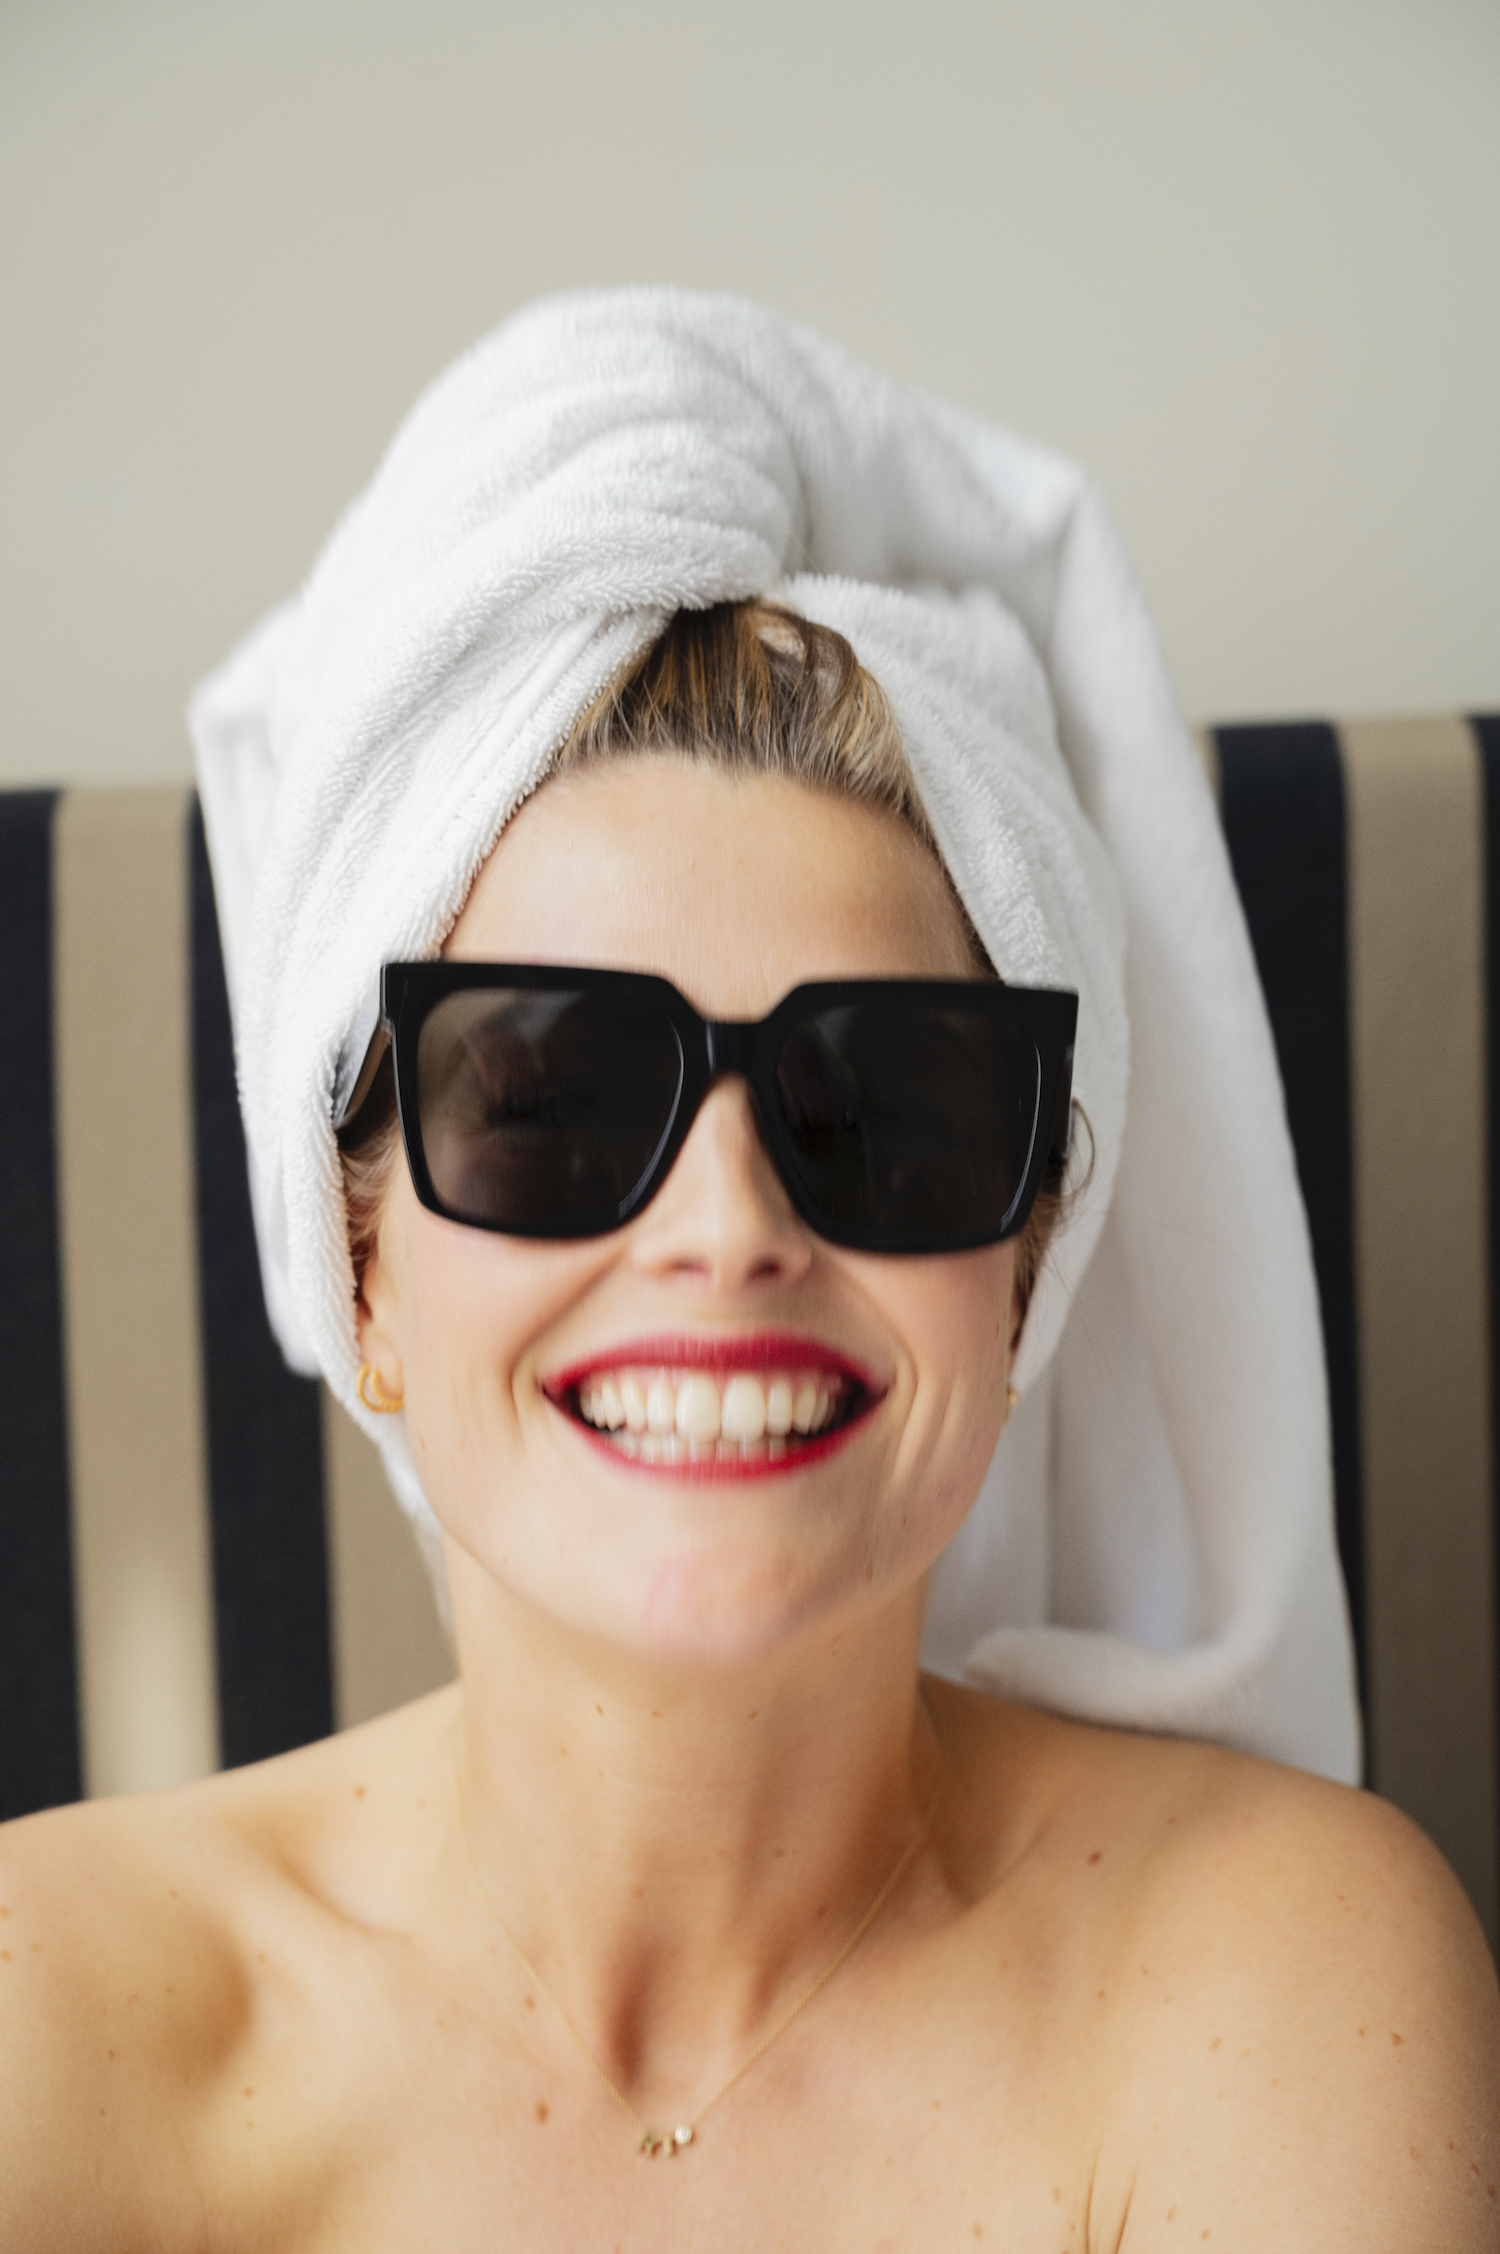 Black/white sunglasses towel on head